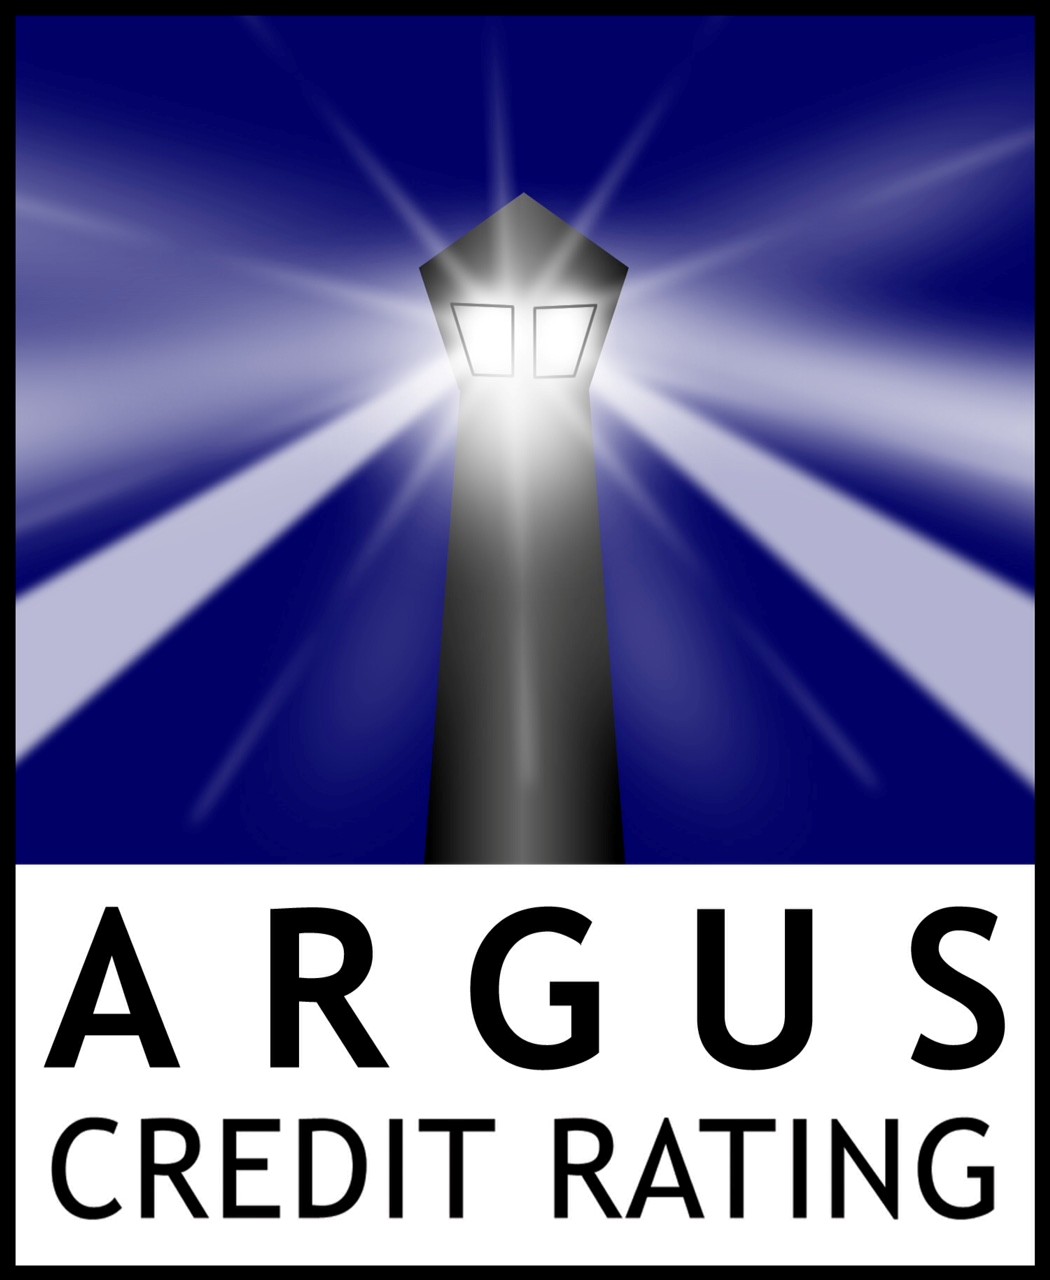 ARGUS Credit Rating